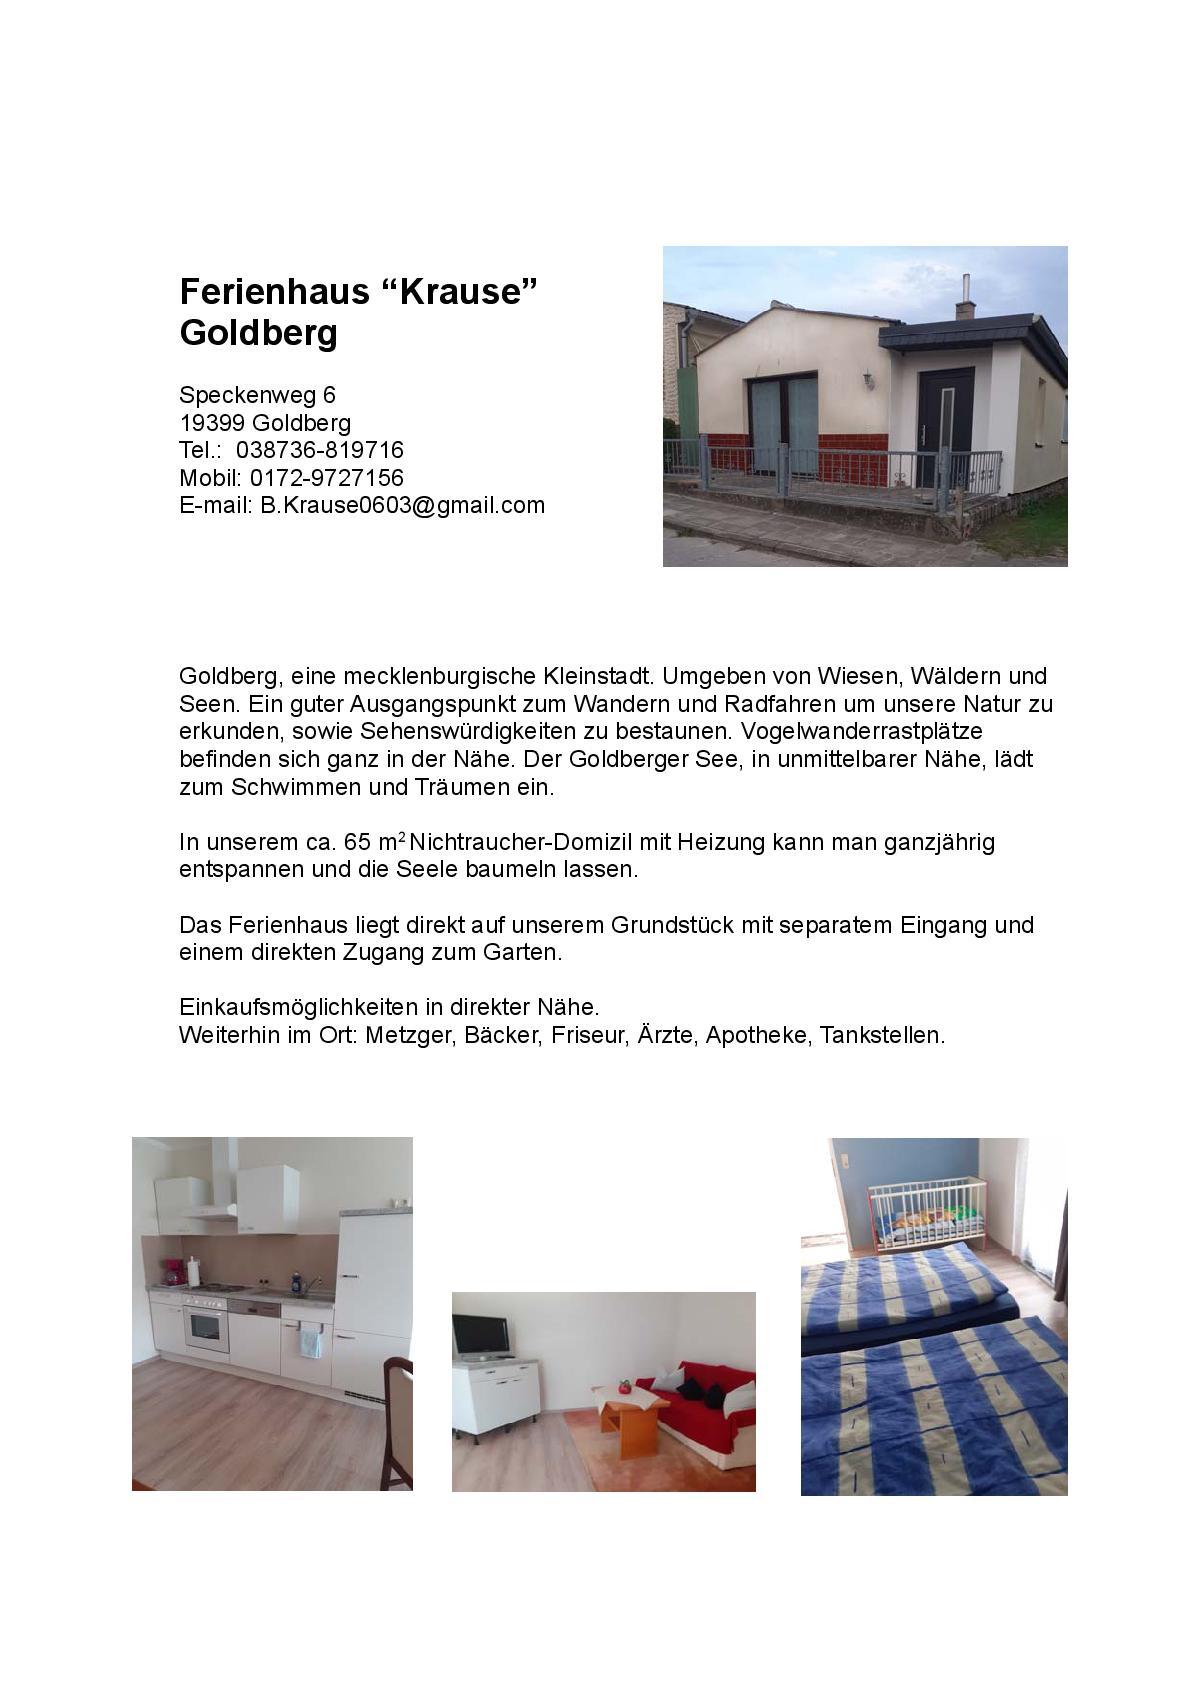 Ferienhaus Krause S.1